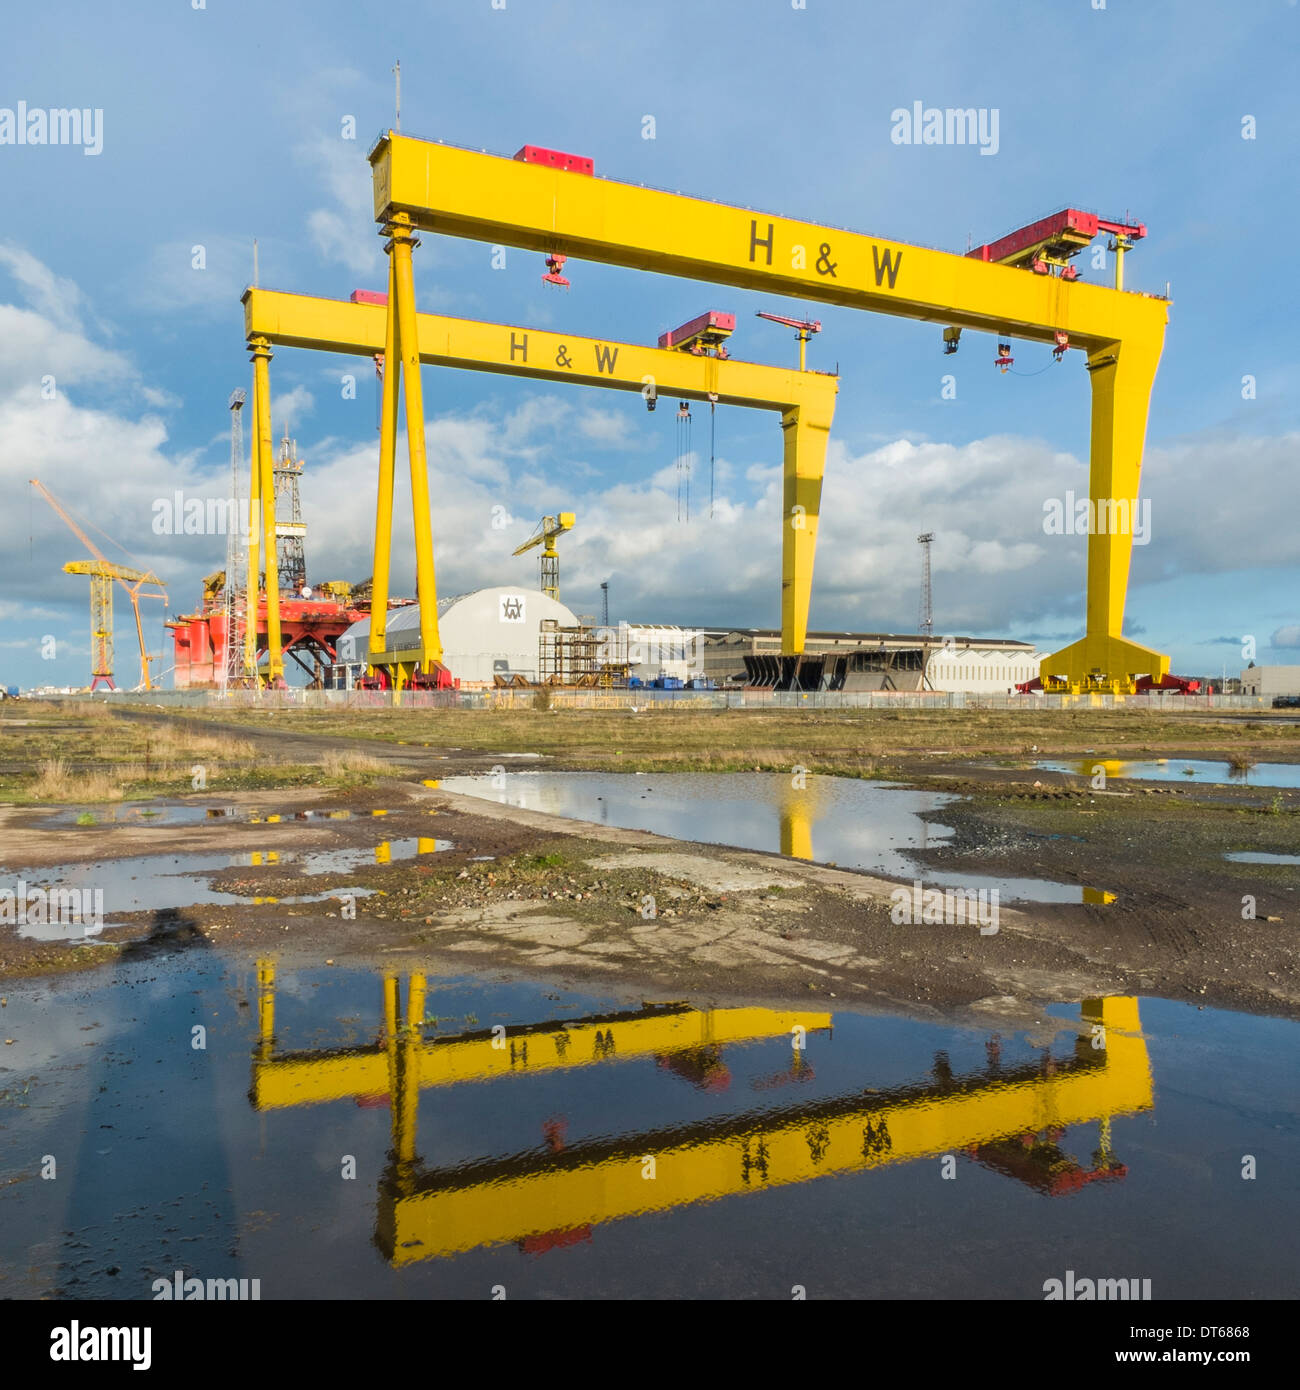 Ansicht der Werft Krane, den Spitznamen Samson und Goliath in Harland und Wolff Werft, Belfast.  Wasserreflexionen im Vordergrund. Stockfoto